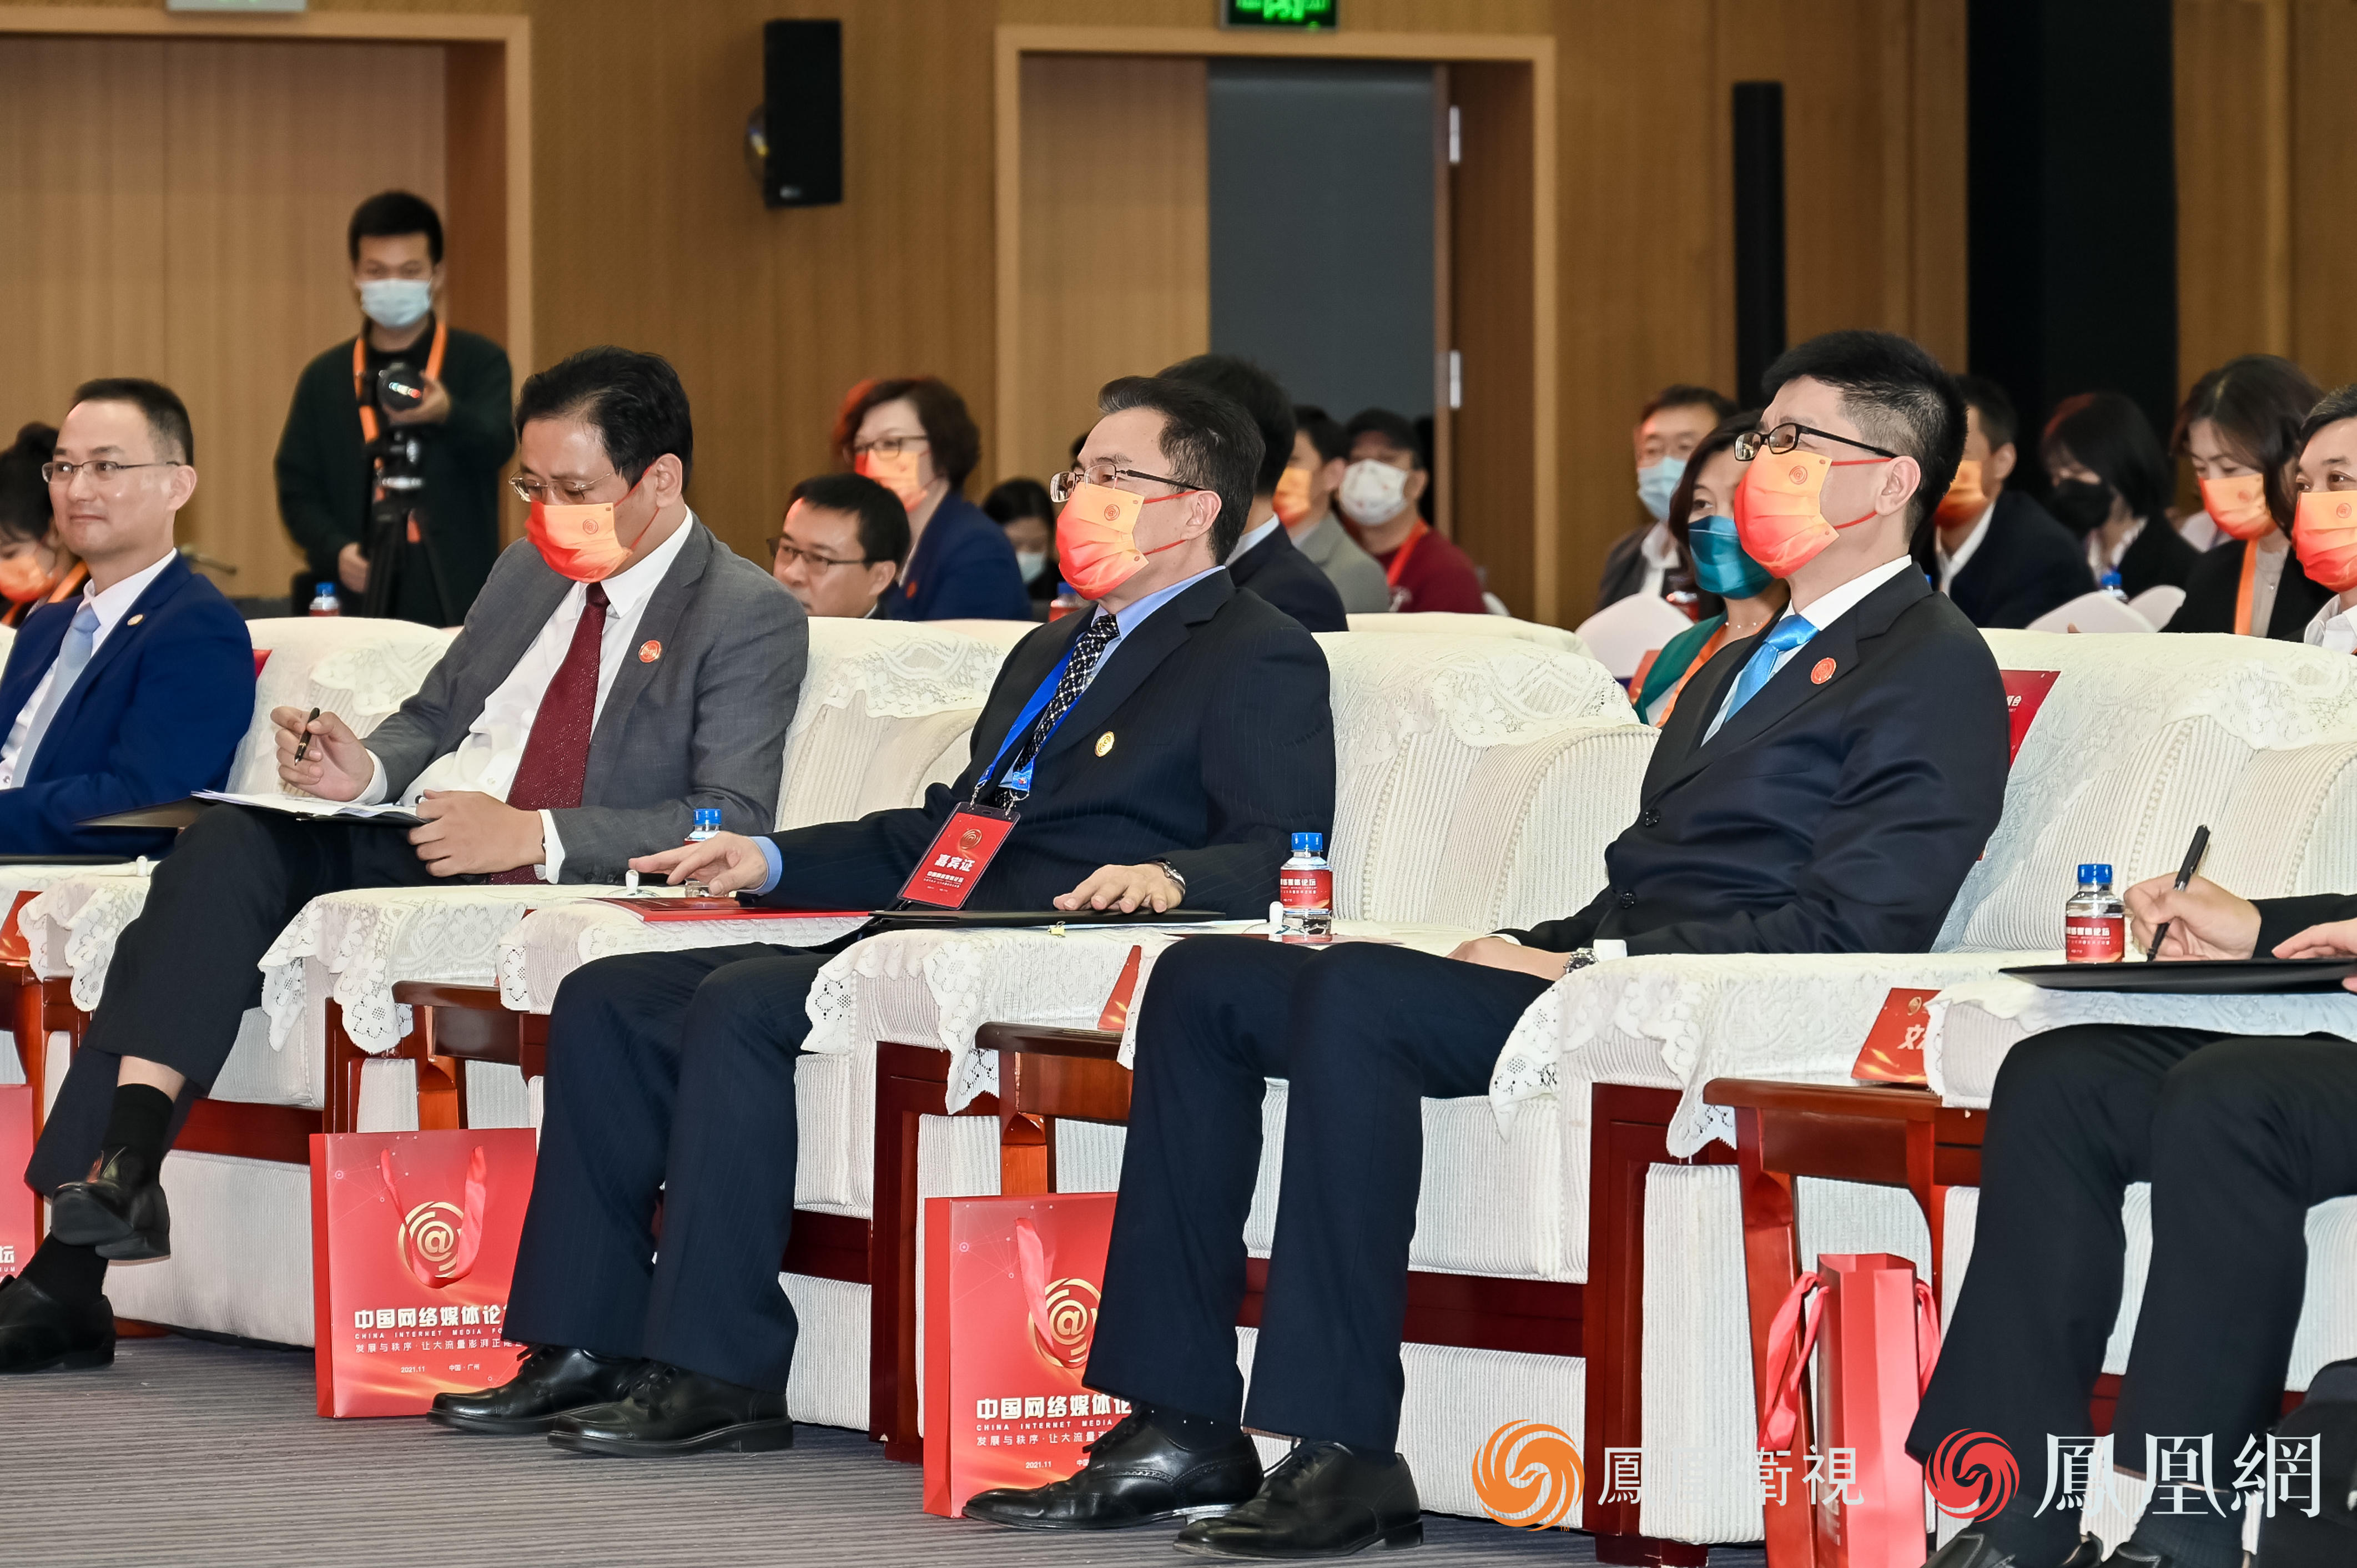 牛一兵、王衍诗、谢登科、徐威出席2021中国网络媒体论坛大湾区峰会